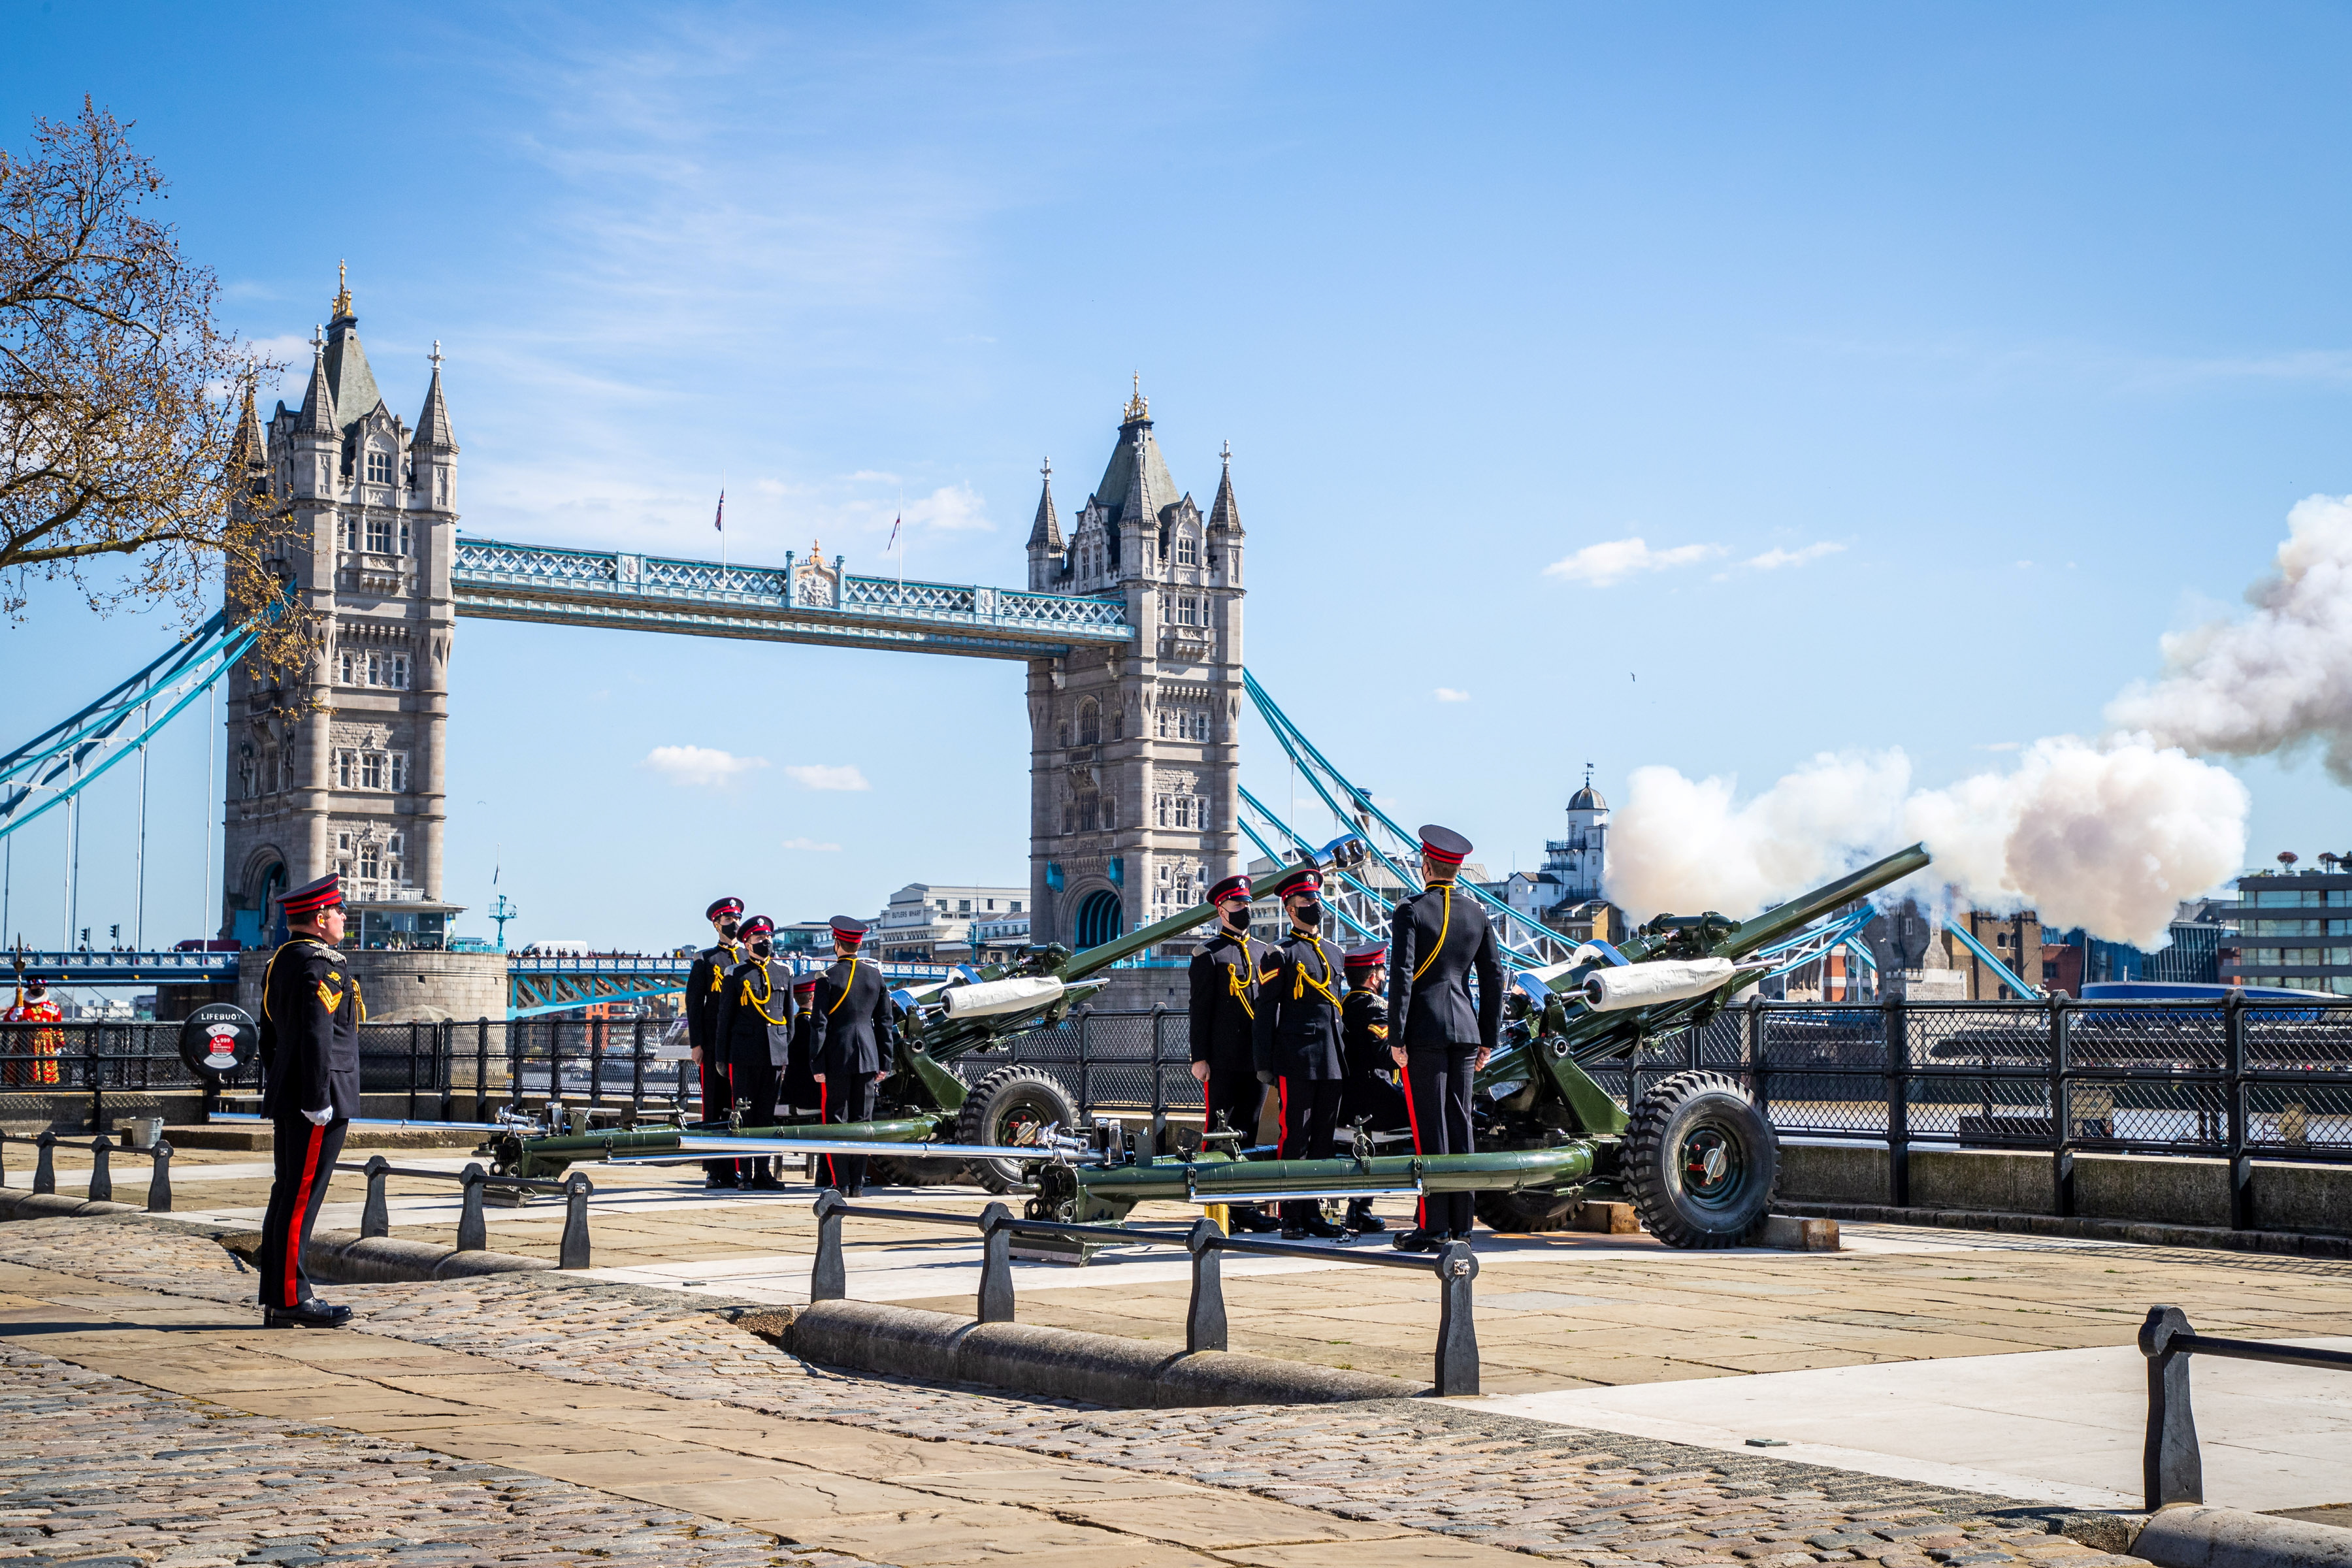 皇家礼炮队在伦敦鸣放礼炮，示意全国默哀一分钟，向菲利普亲王表达哀思。-路透社-